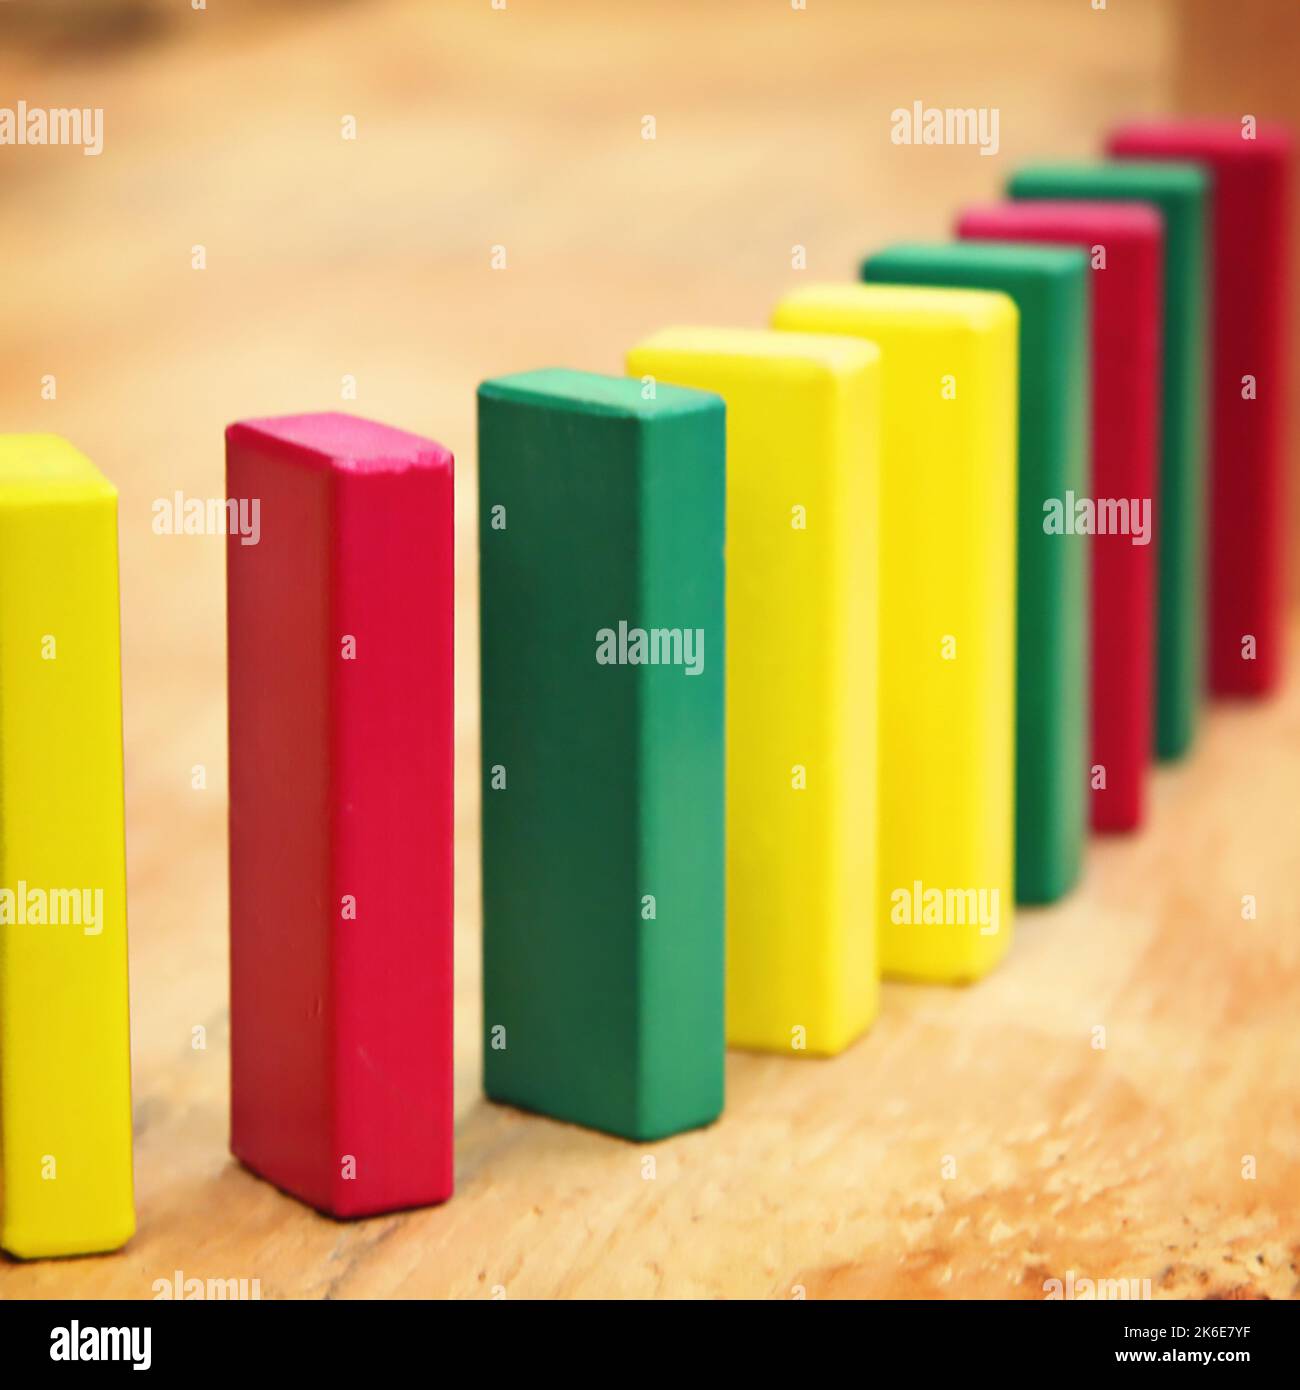 Holzbausteine für einen Vorschulunterricht oder ein Kind stehen in Rot, Gelb und Grün auf, um eine Reihe zu bilden und fallen wie Dominosteine nach unten Stockfoto